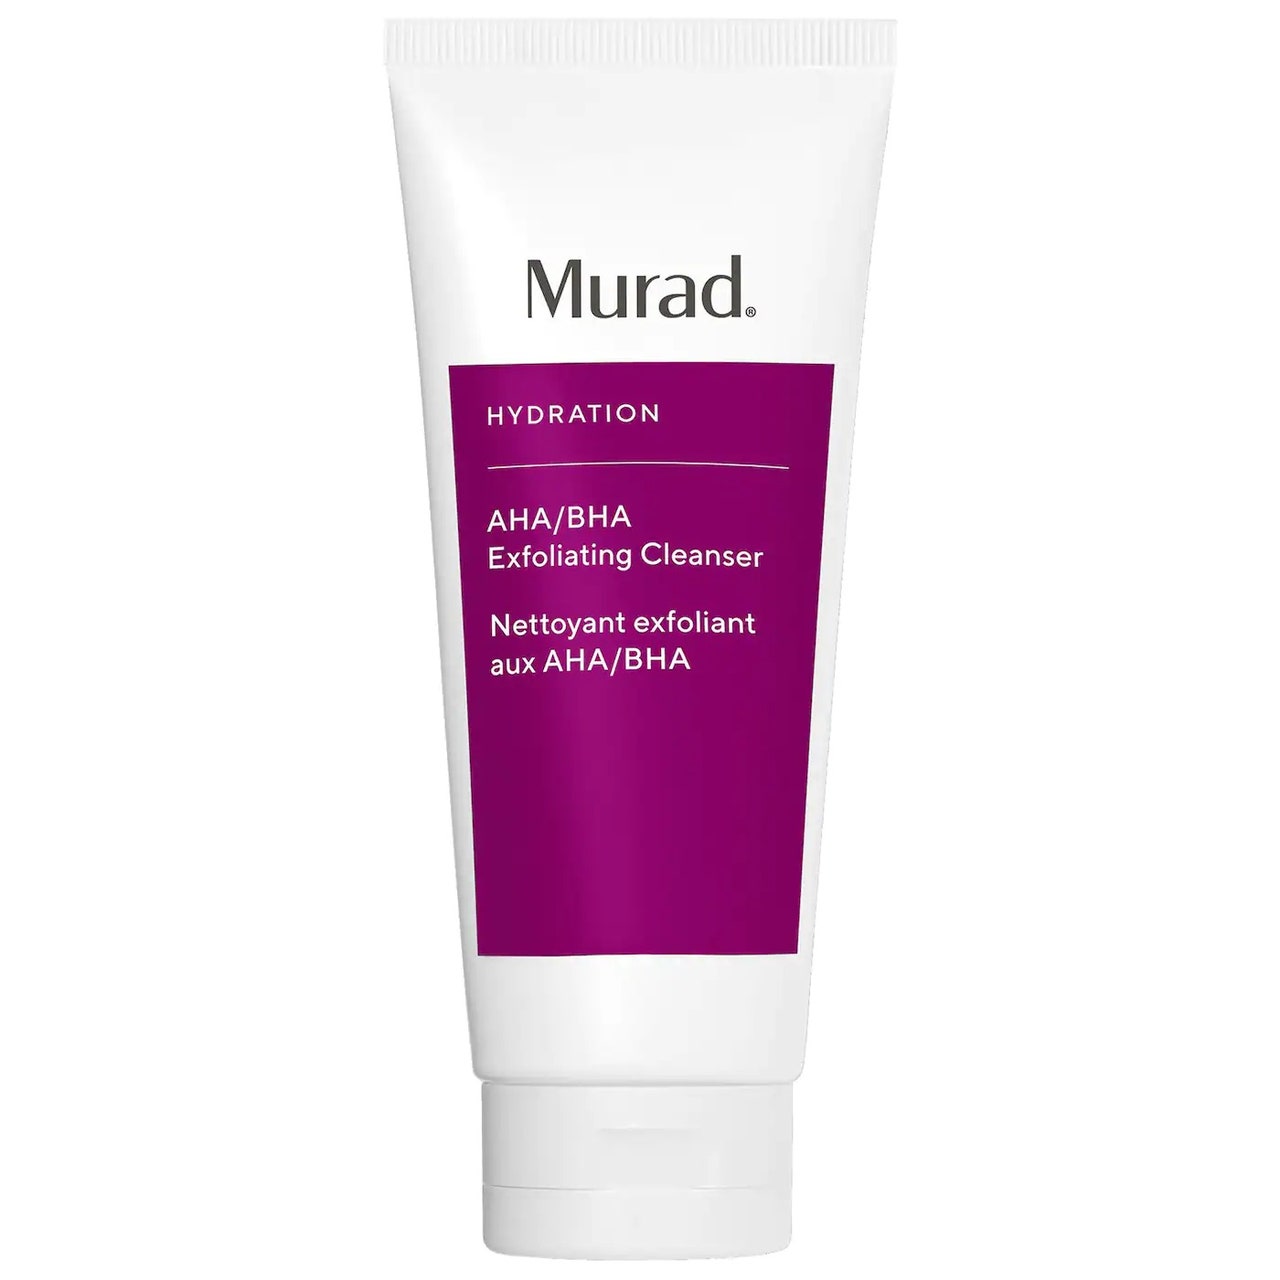 Murad AHA/BHA Exfoliating Cleanser, weiße Tube mit violettem Etikett auf weißem Hintergrund